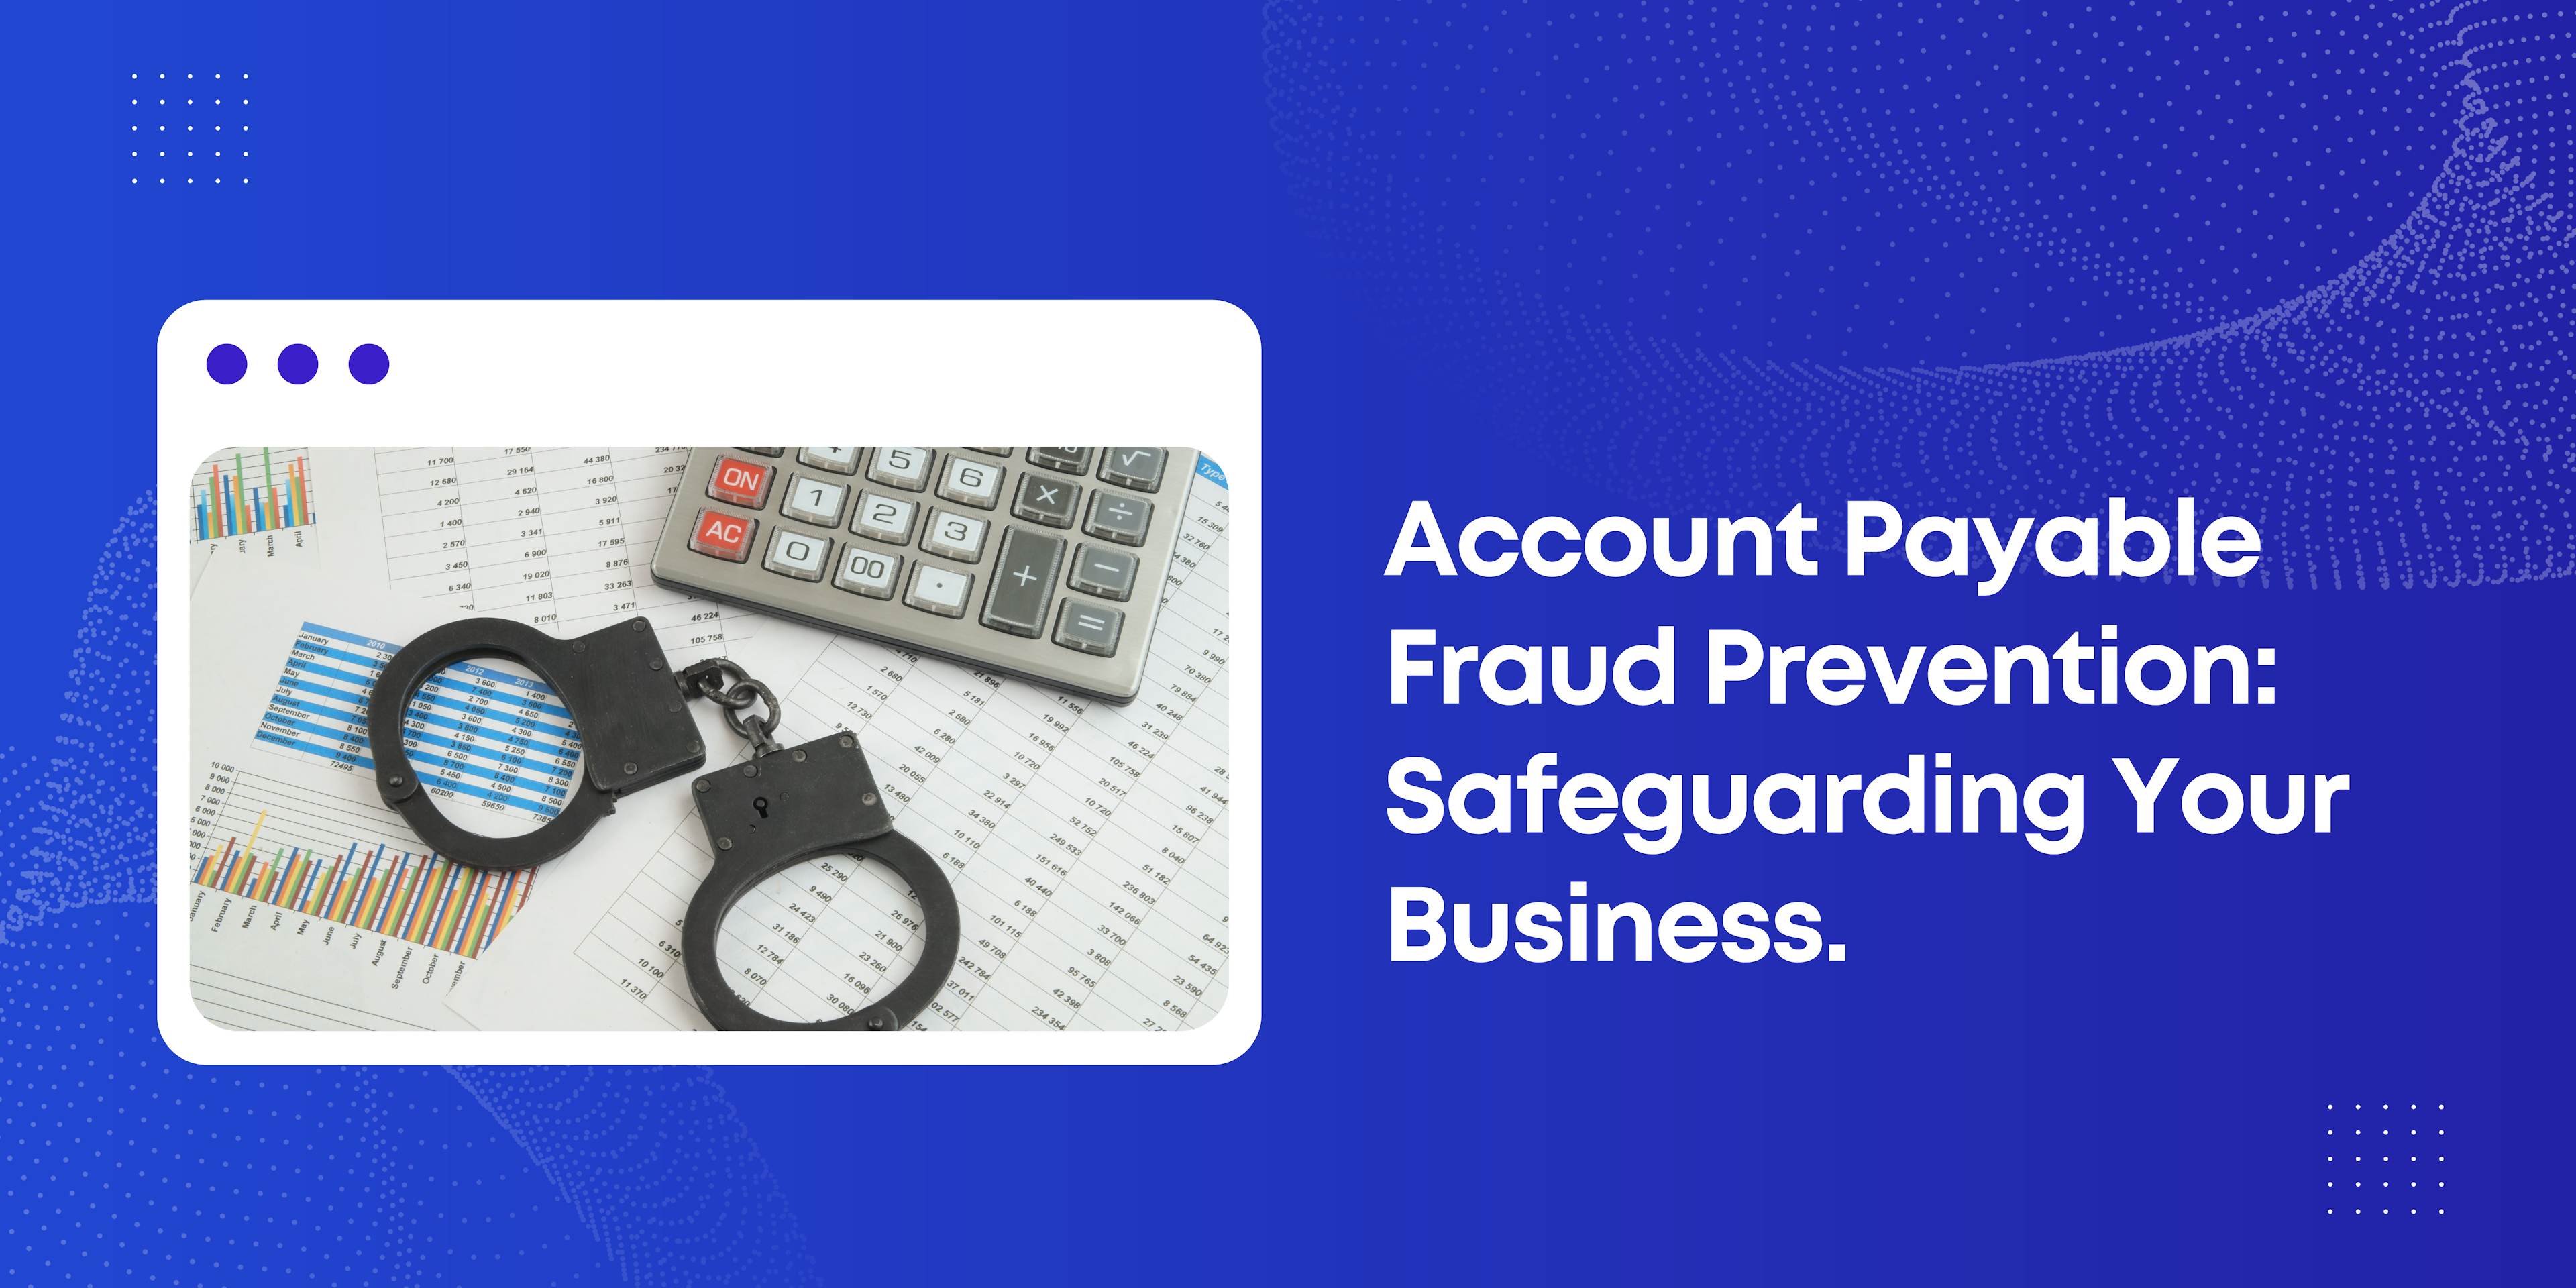 Accounts Payable Fraud